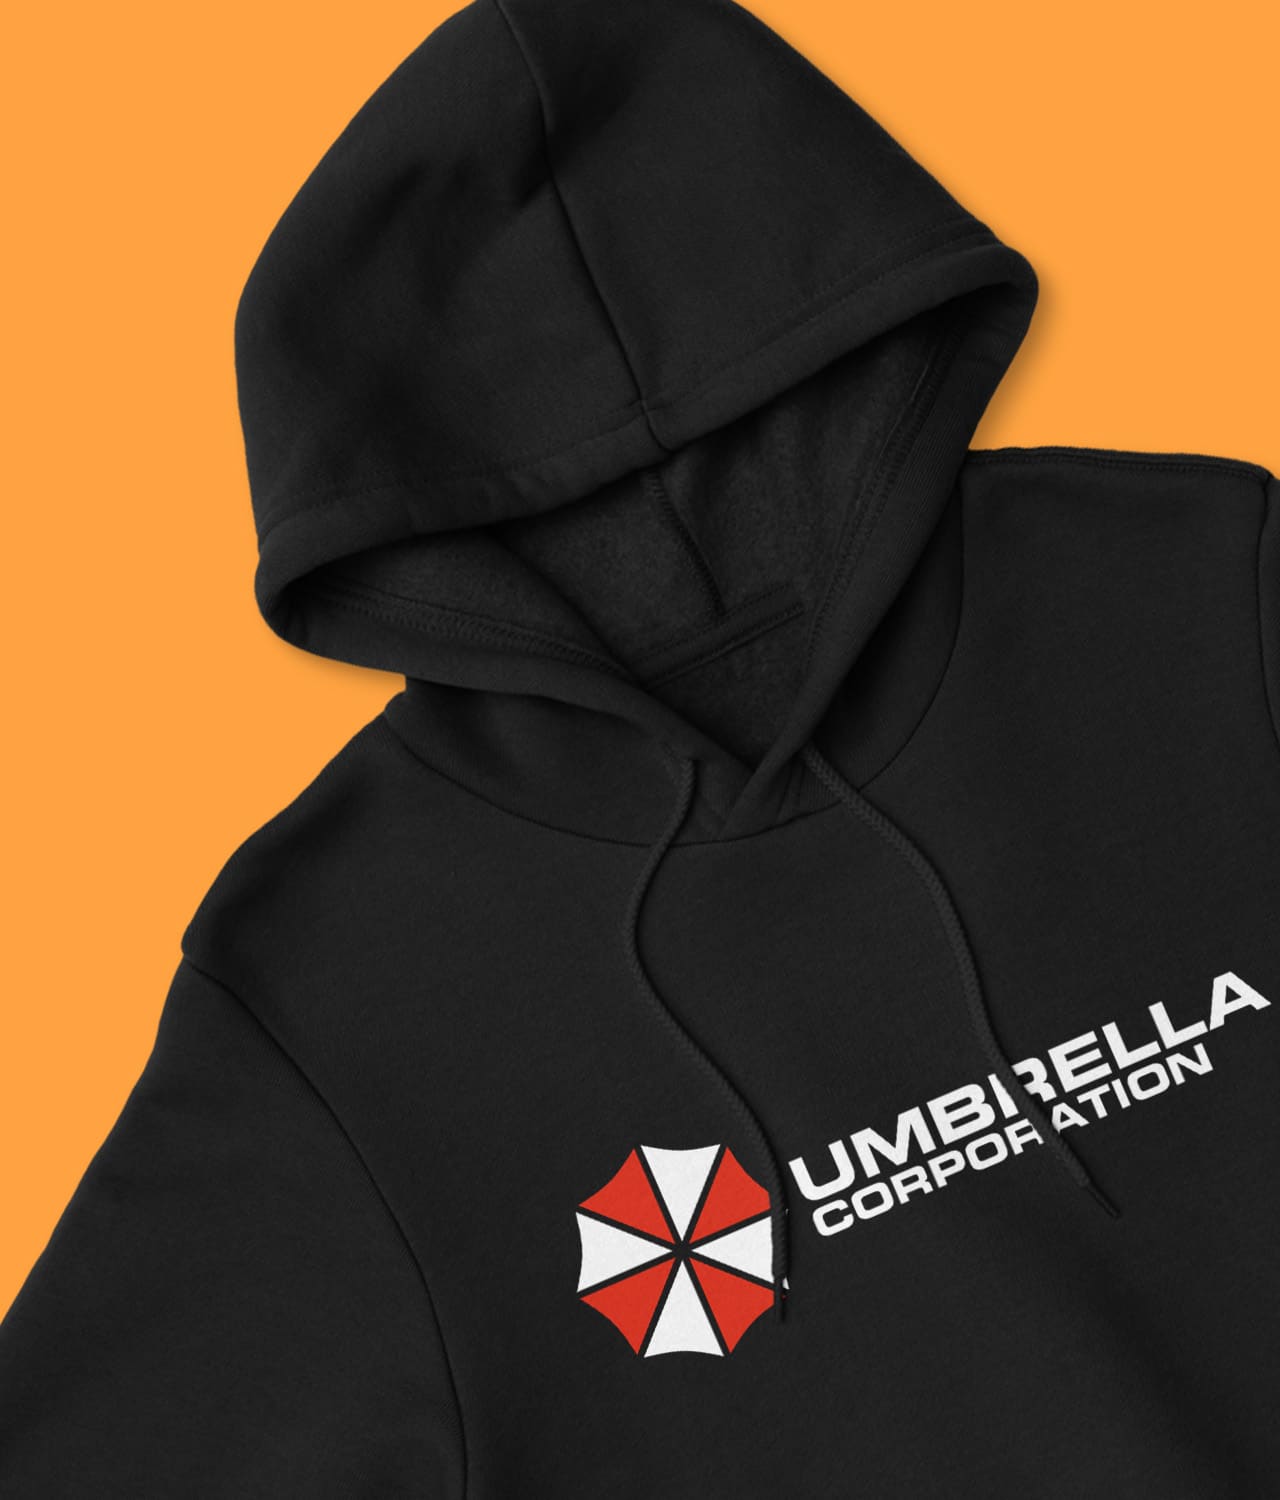 Buy Umbrella Corporation Hoodie • SOLIDPOP ®